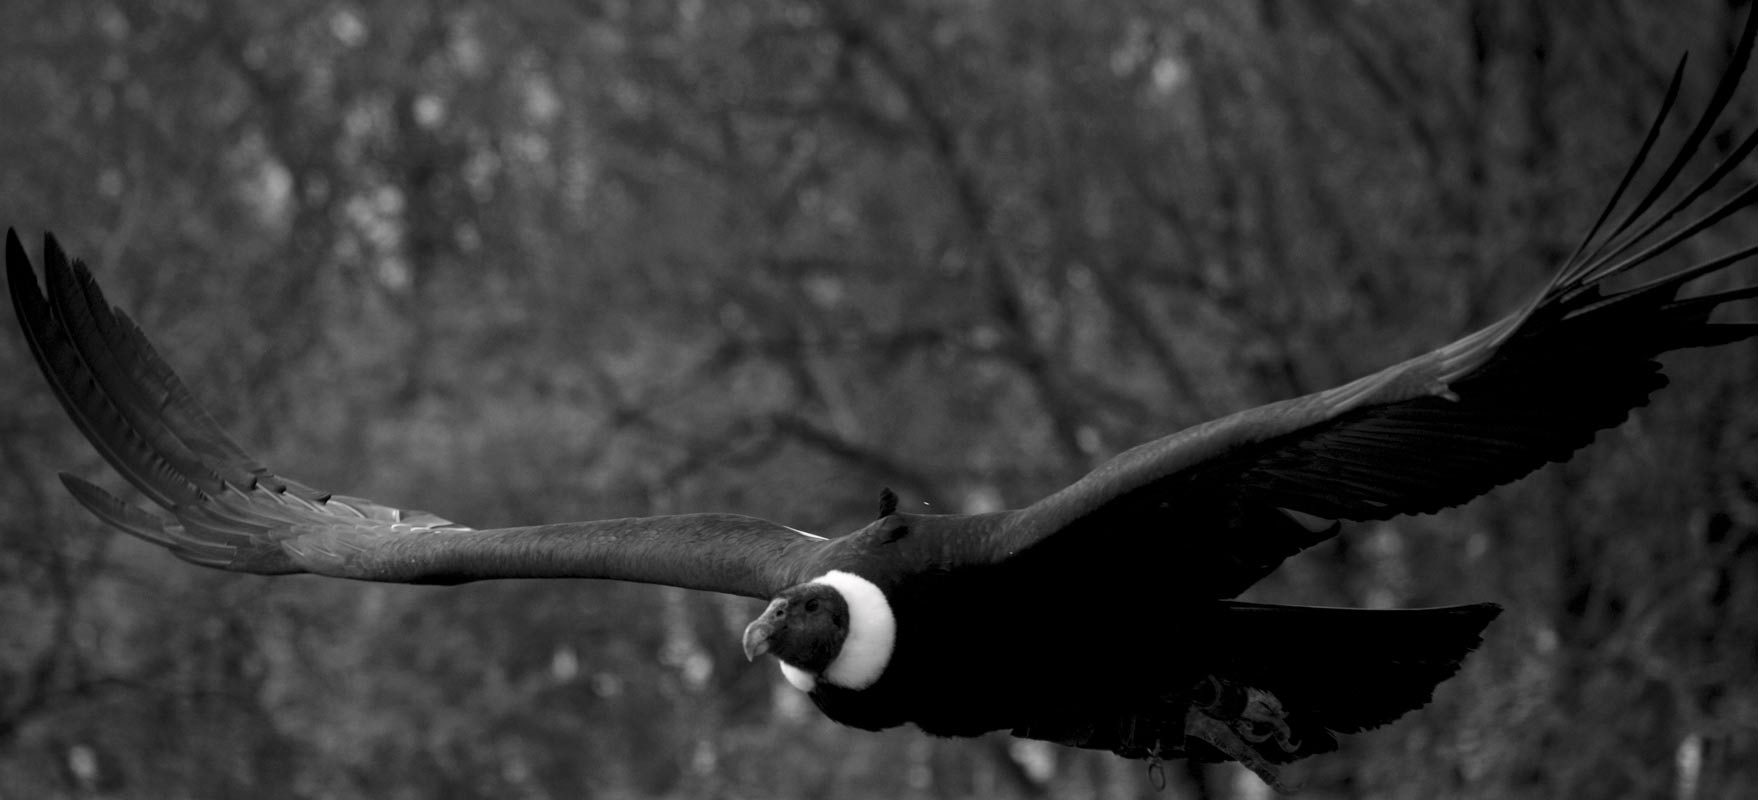 Parc ornithologique Midi-Pyrénées : Venez voir le Condor des Andes, le plus grand rapace au monde pendant un spectacle d'oiseaux au Rocher des Aigles.